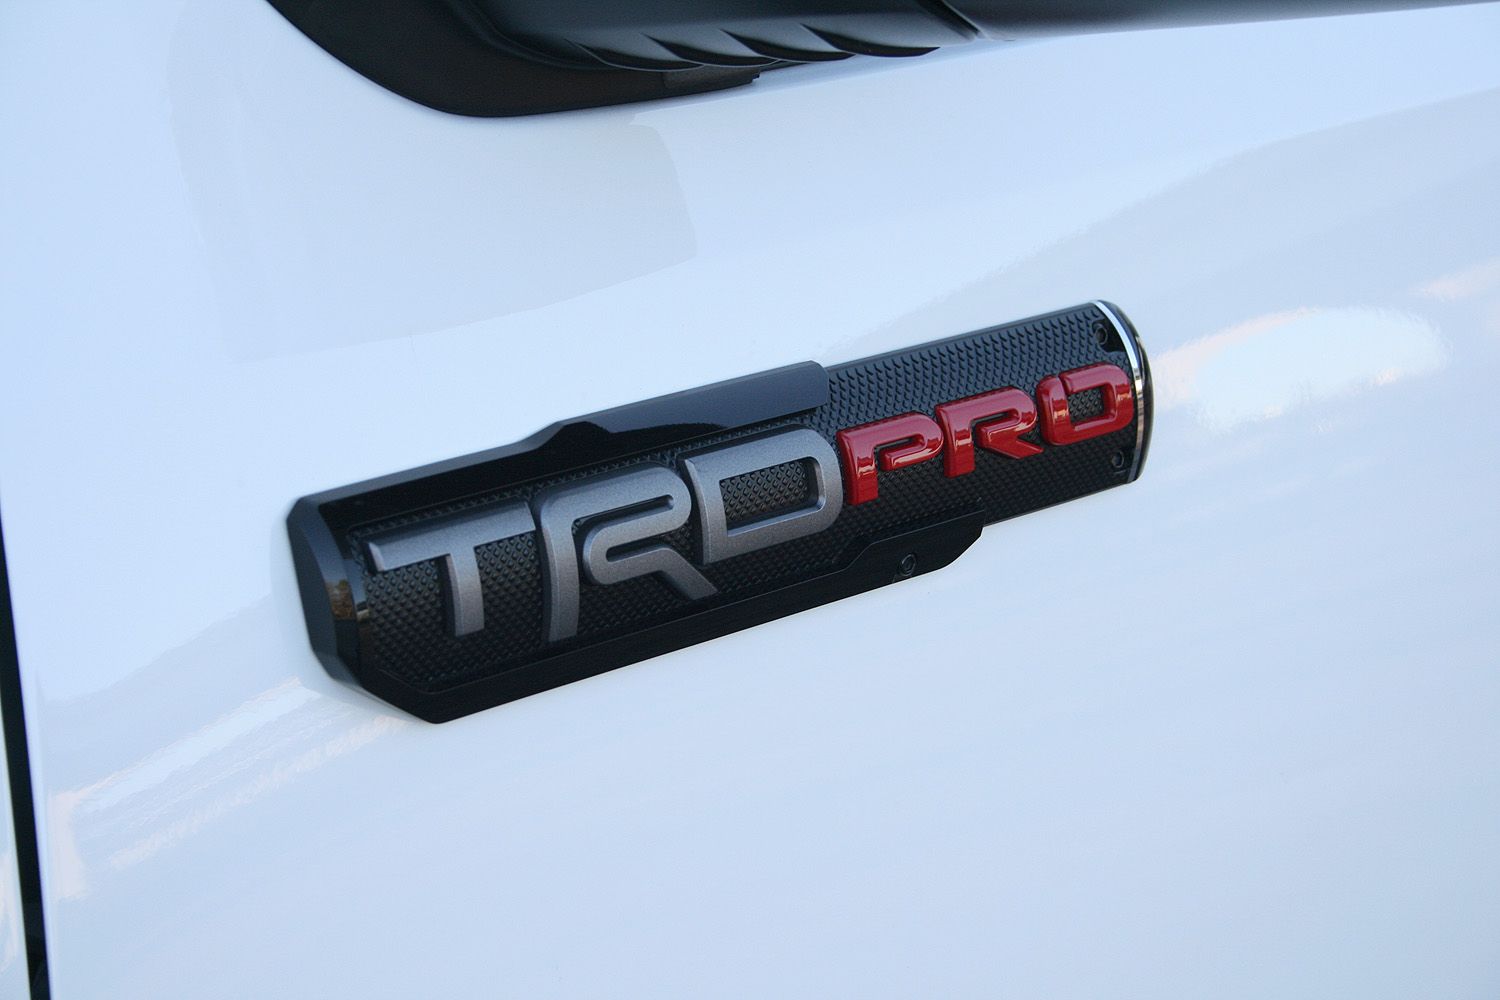 2017 Toyota Tacoma TRD Pro – Driven